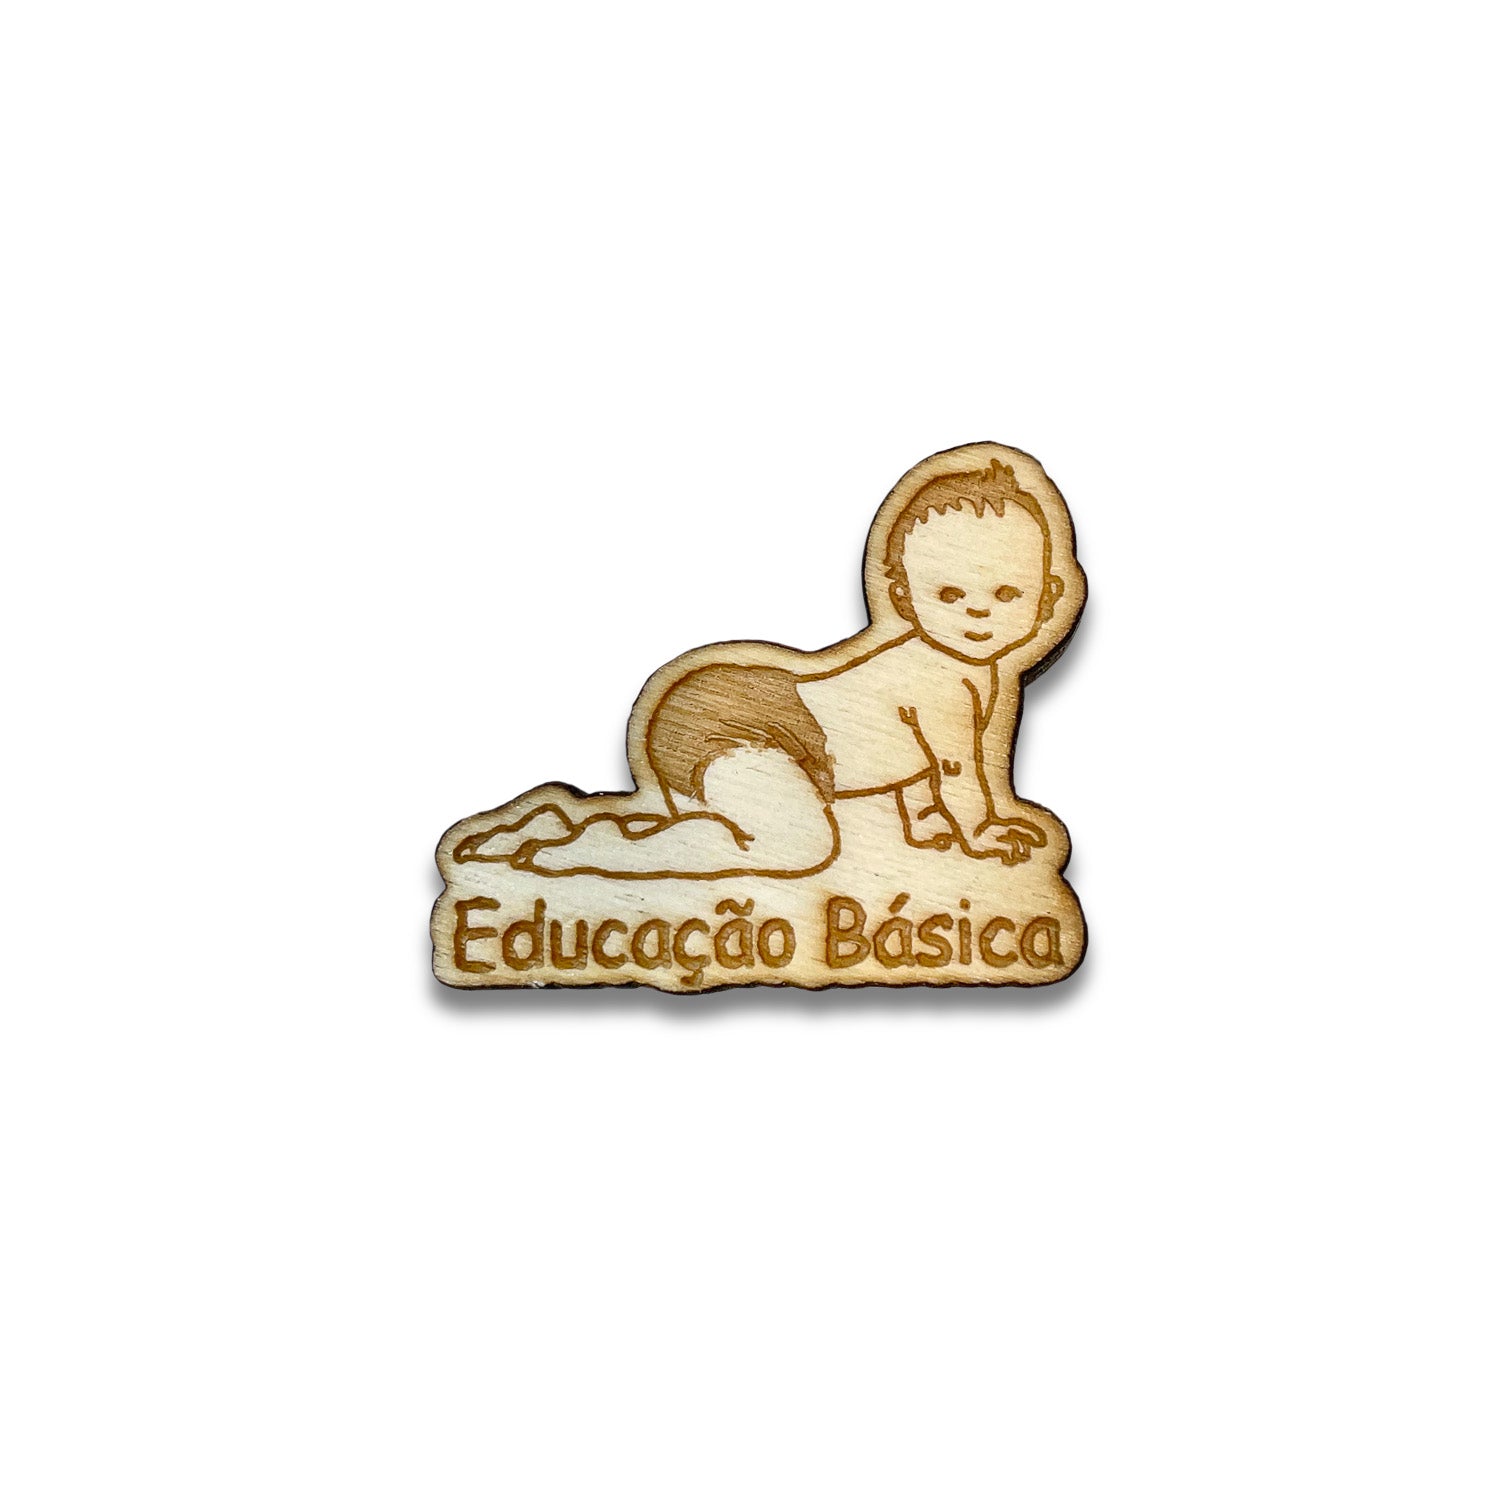 Educação Básica (bébé)